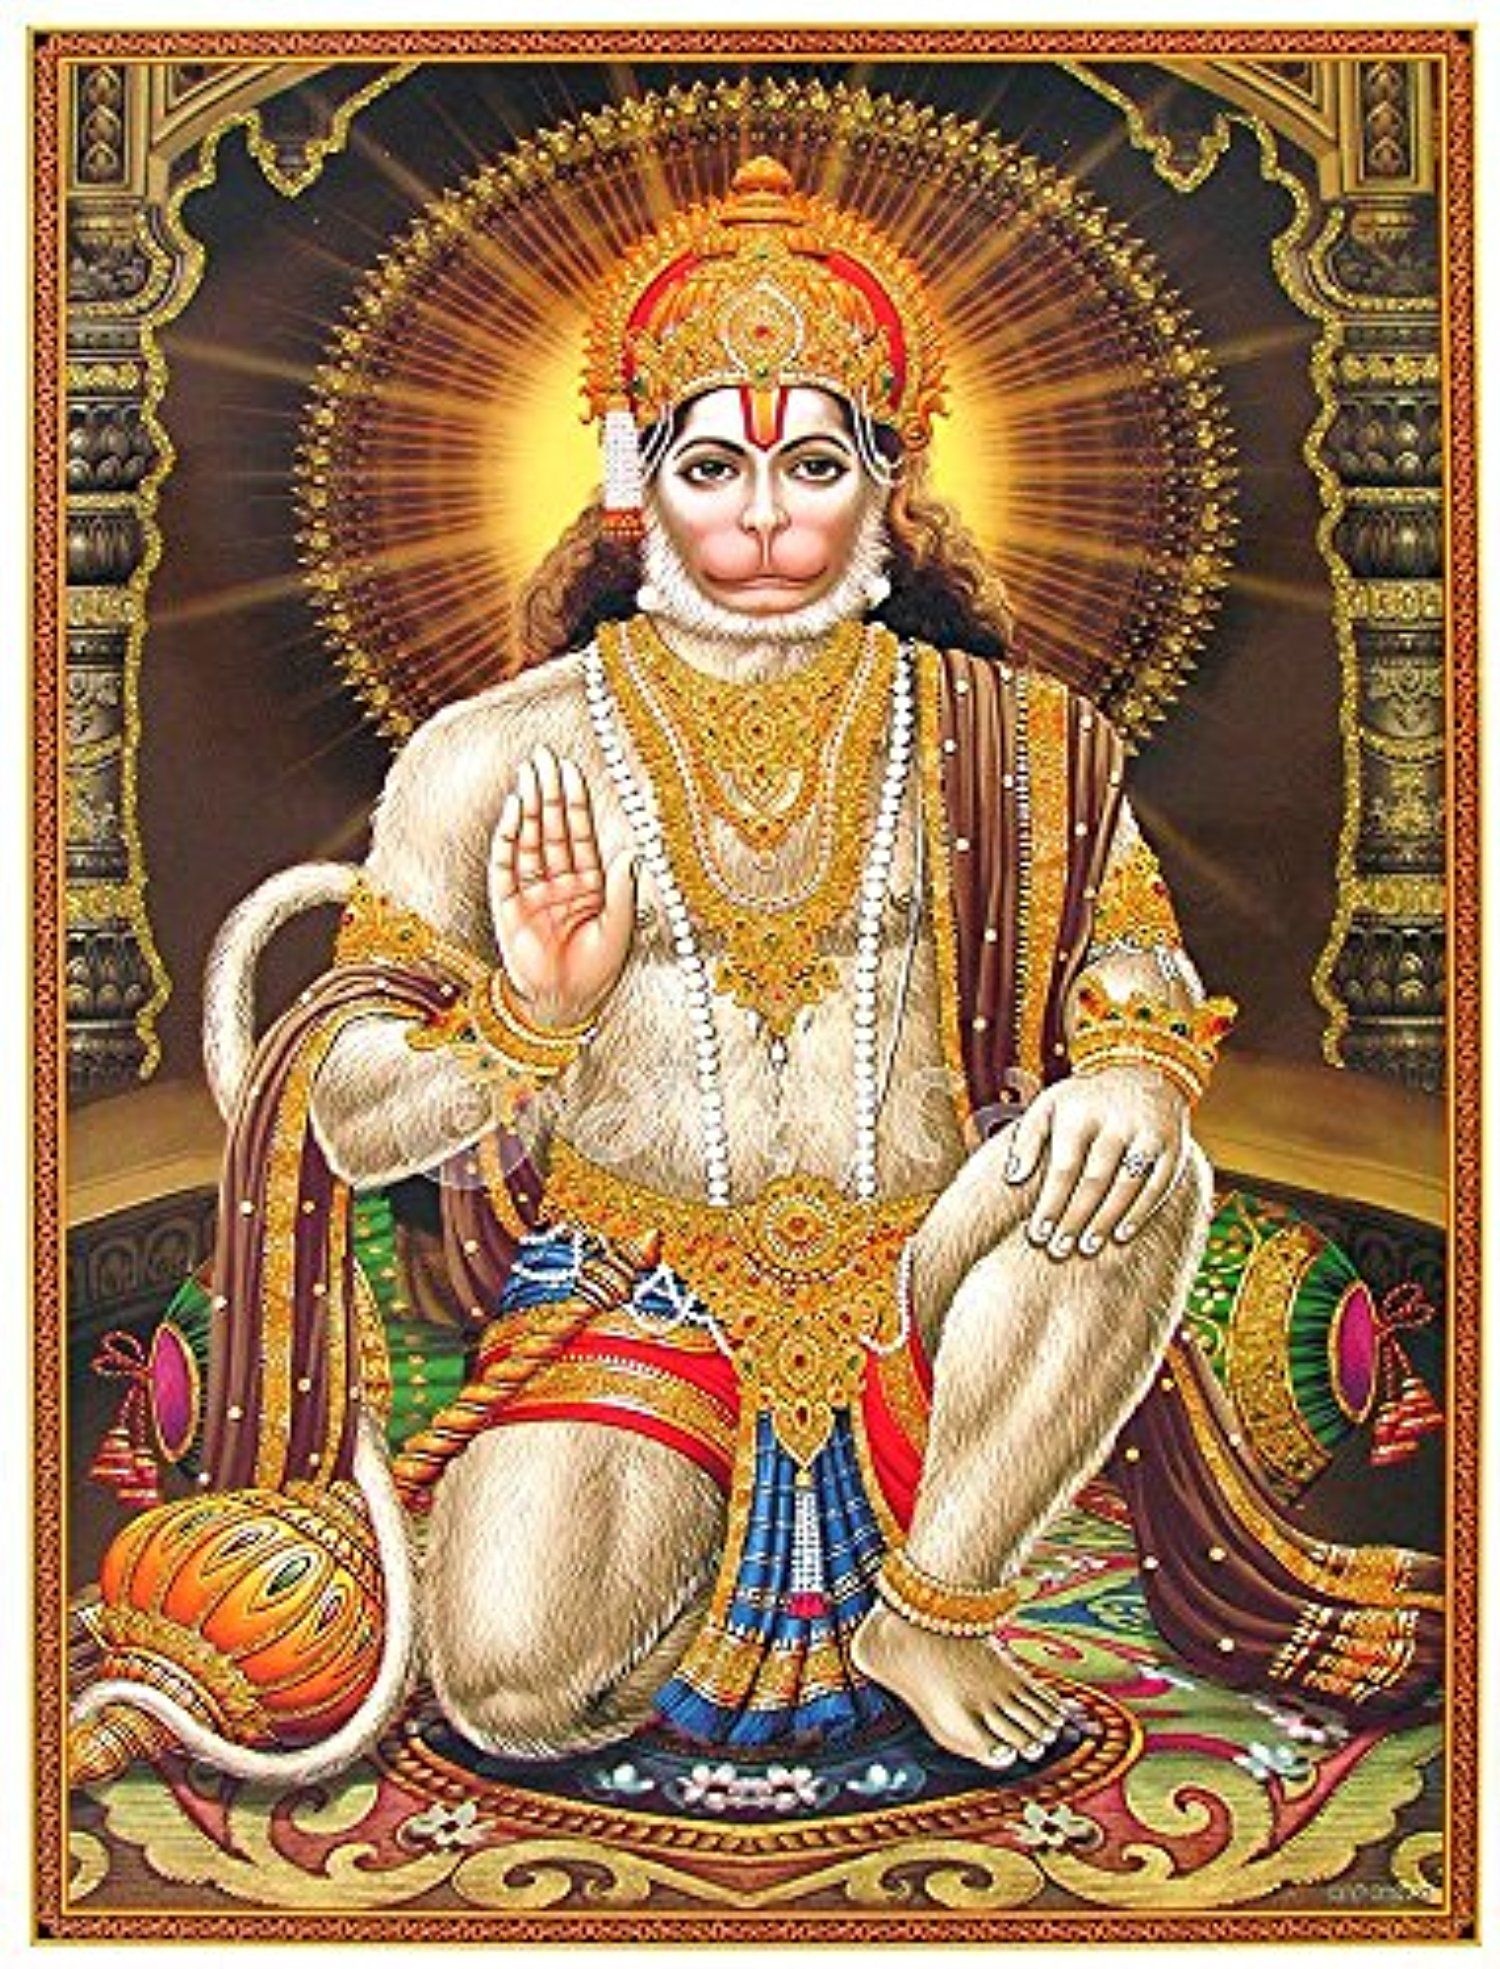 Shri hanuman ji ke - shri hanuman